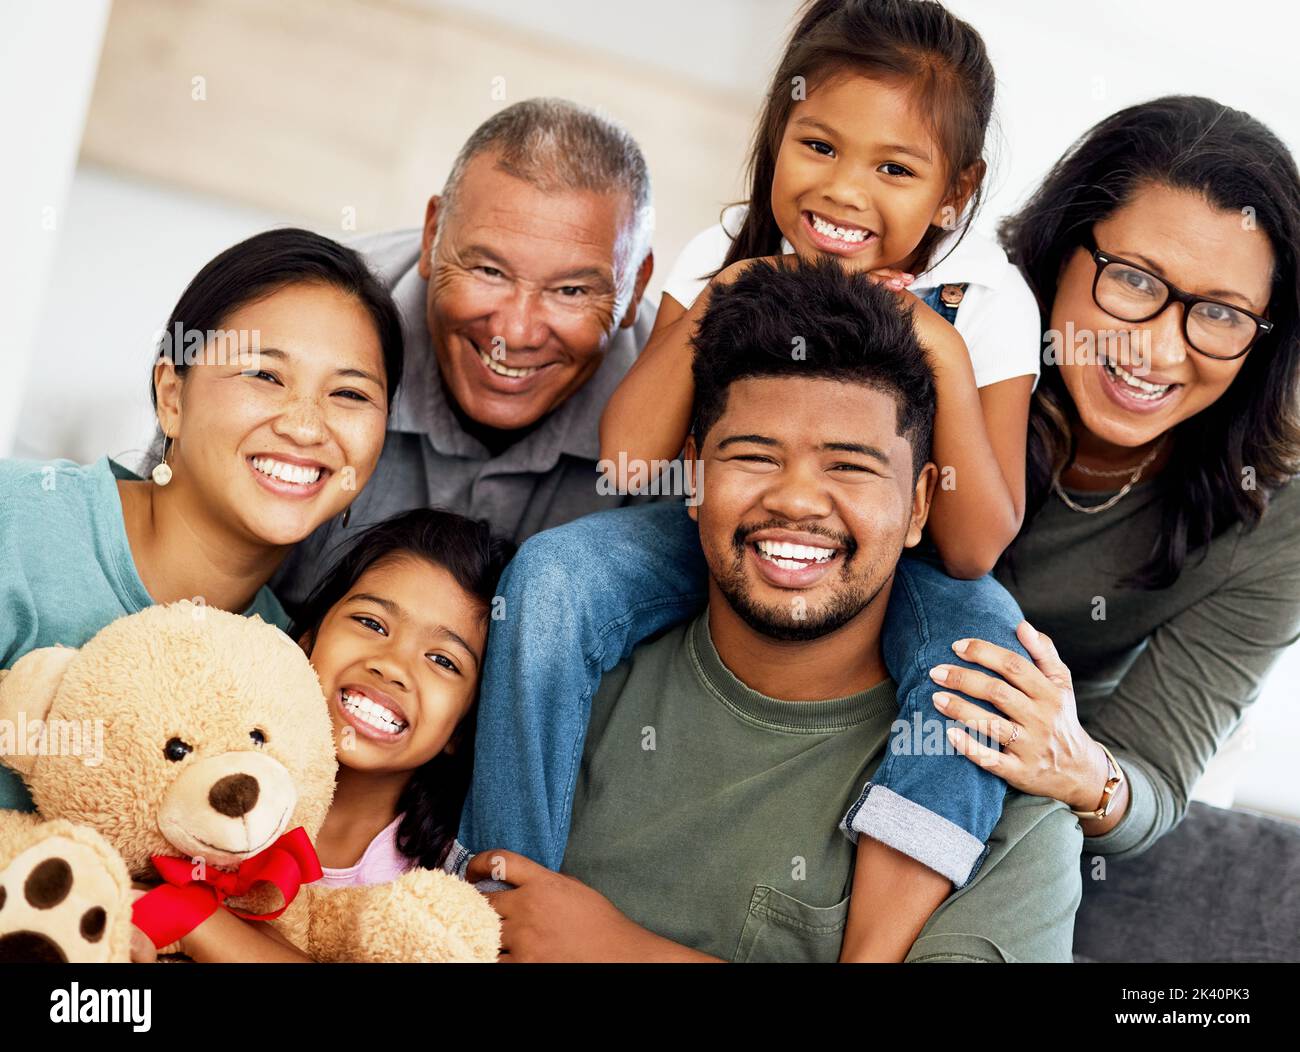 Casa di famiglia, felice ritratto e nonni nel soggiorno con i bambini, sorridere durante la visita a casa e la cura sul divano in salotto insieme. Africano Foto Stock